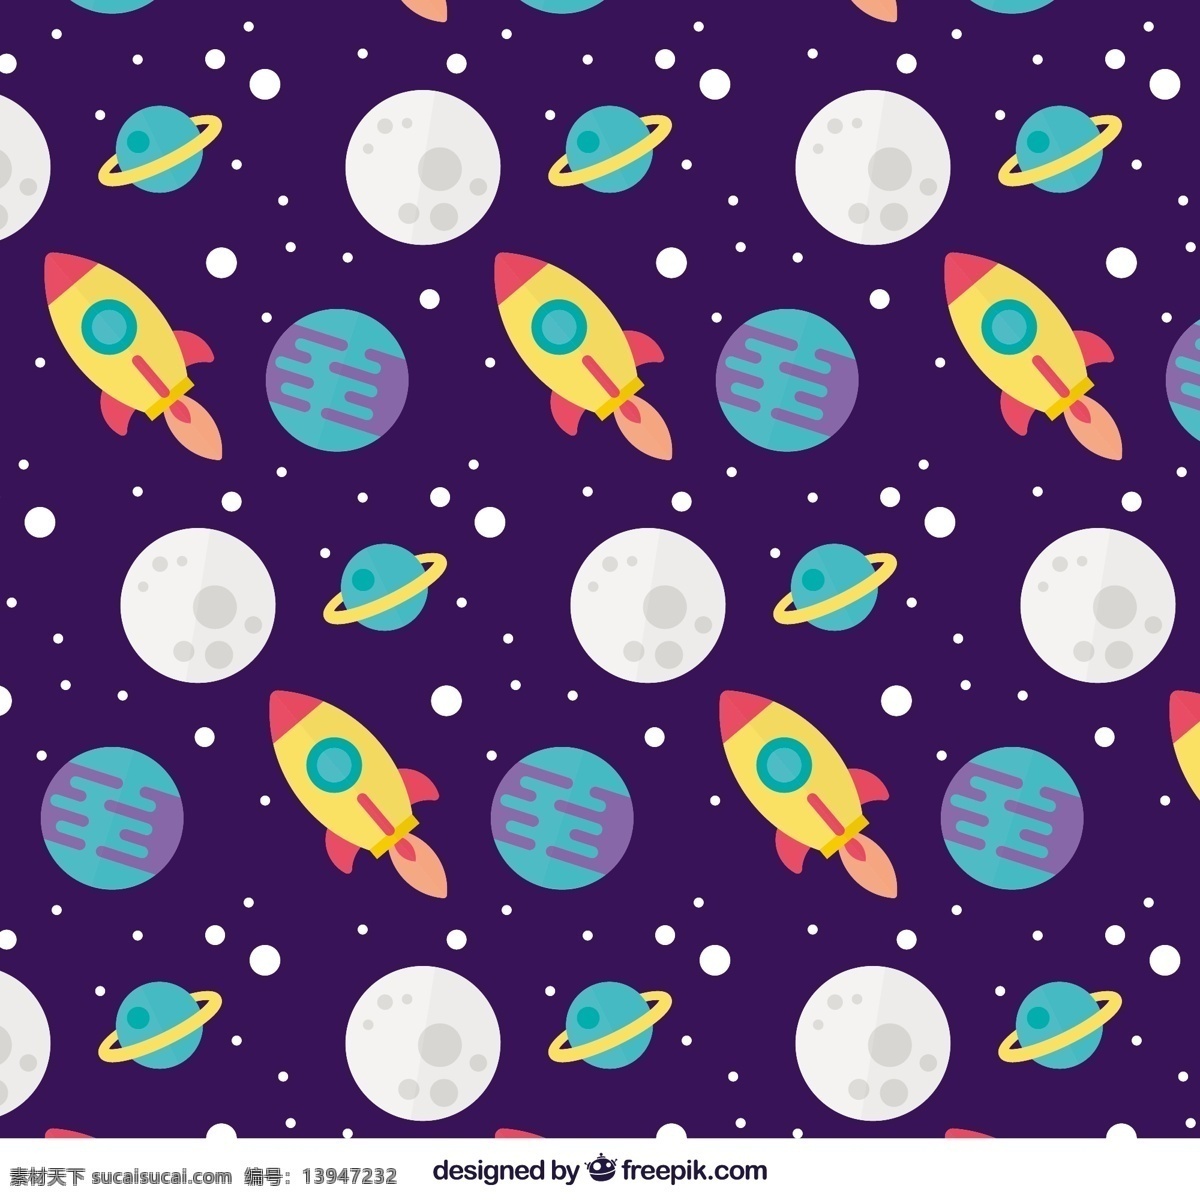 卫星 大 平面 图案 行星和火箭 背景 灯光 色彩 月亮 装饰 火箭 多彩的背景 夜晚 无缝的图案 行星 平面设计 图案背景 镶嵌 无缝